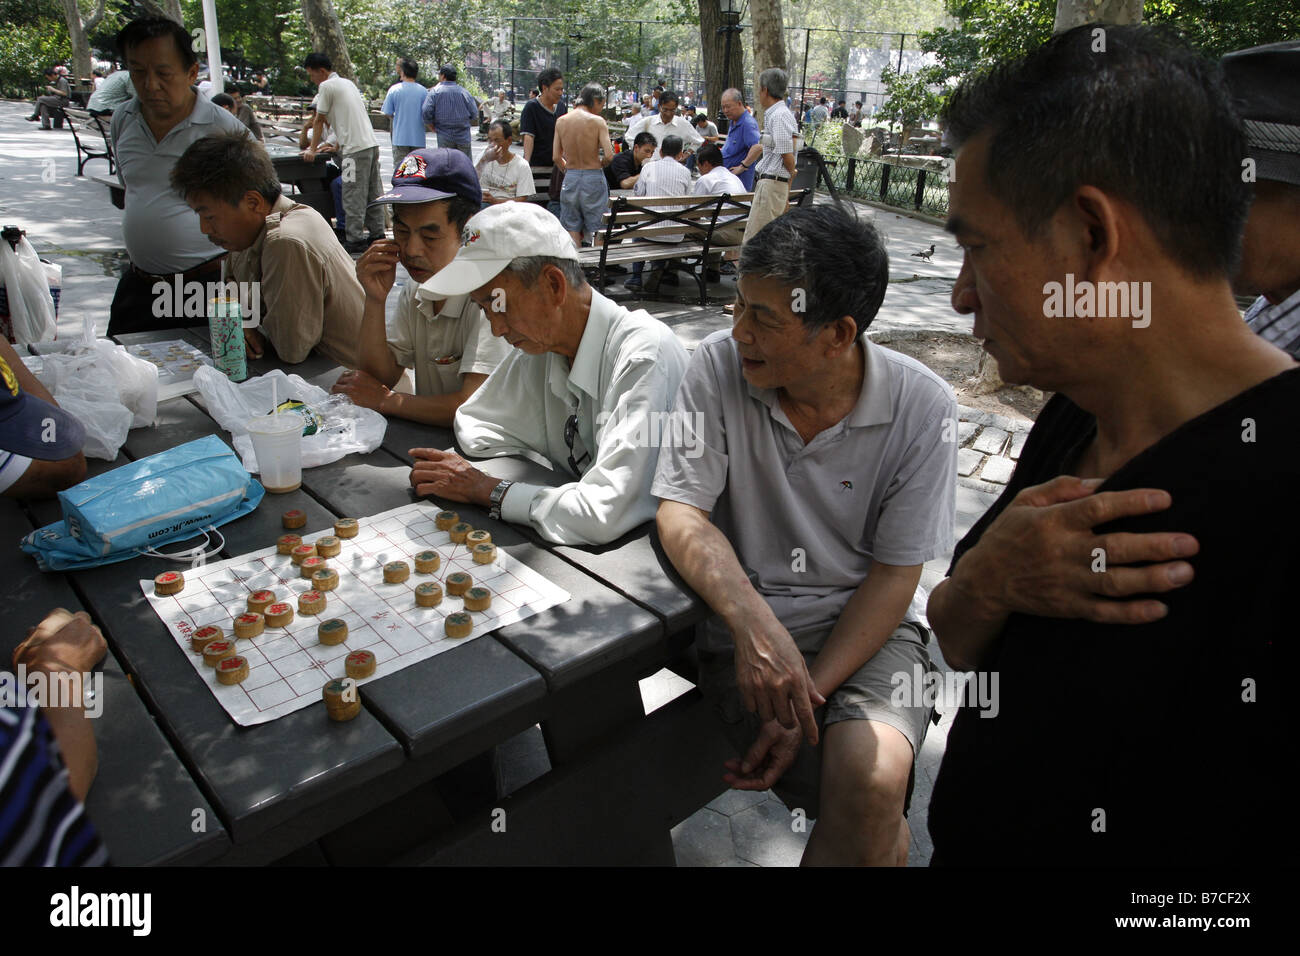 Xiangqi Game, Columbus Park, Chinatown, New York City, USA Stock Photo